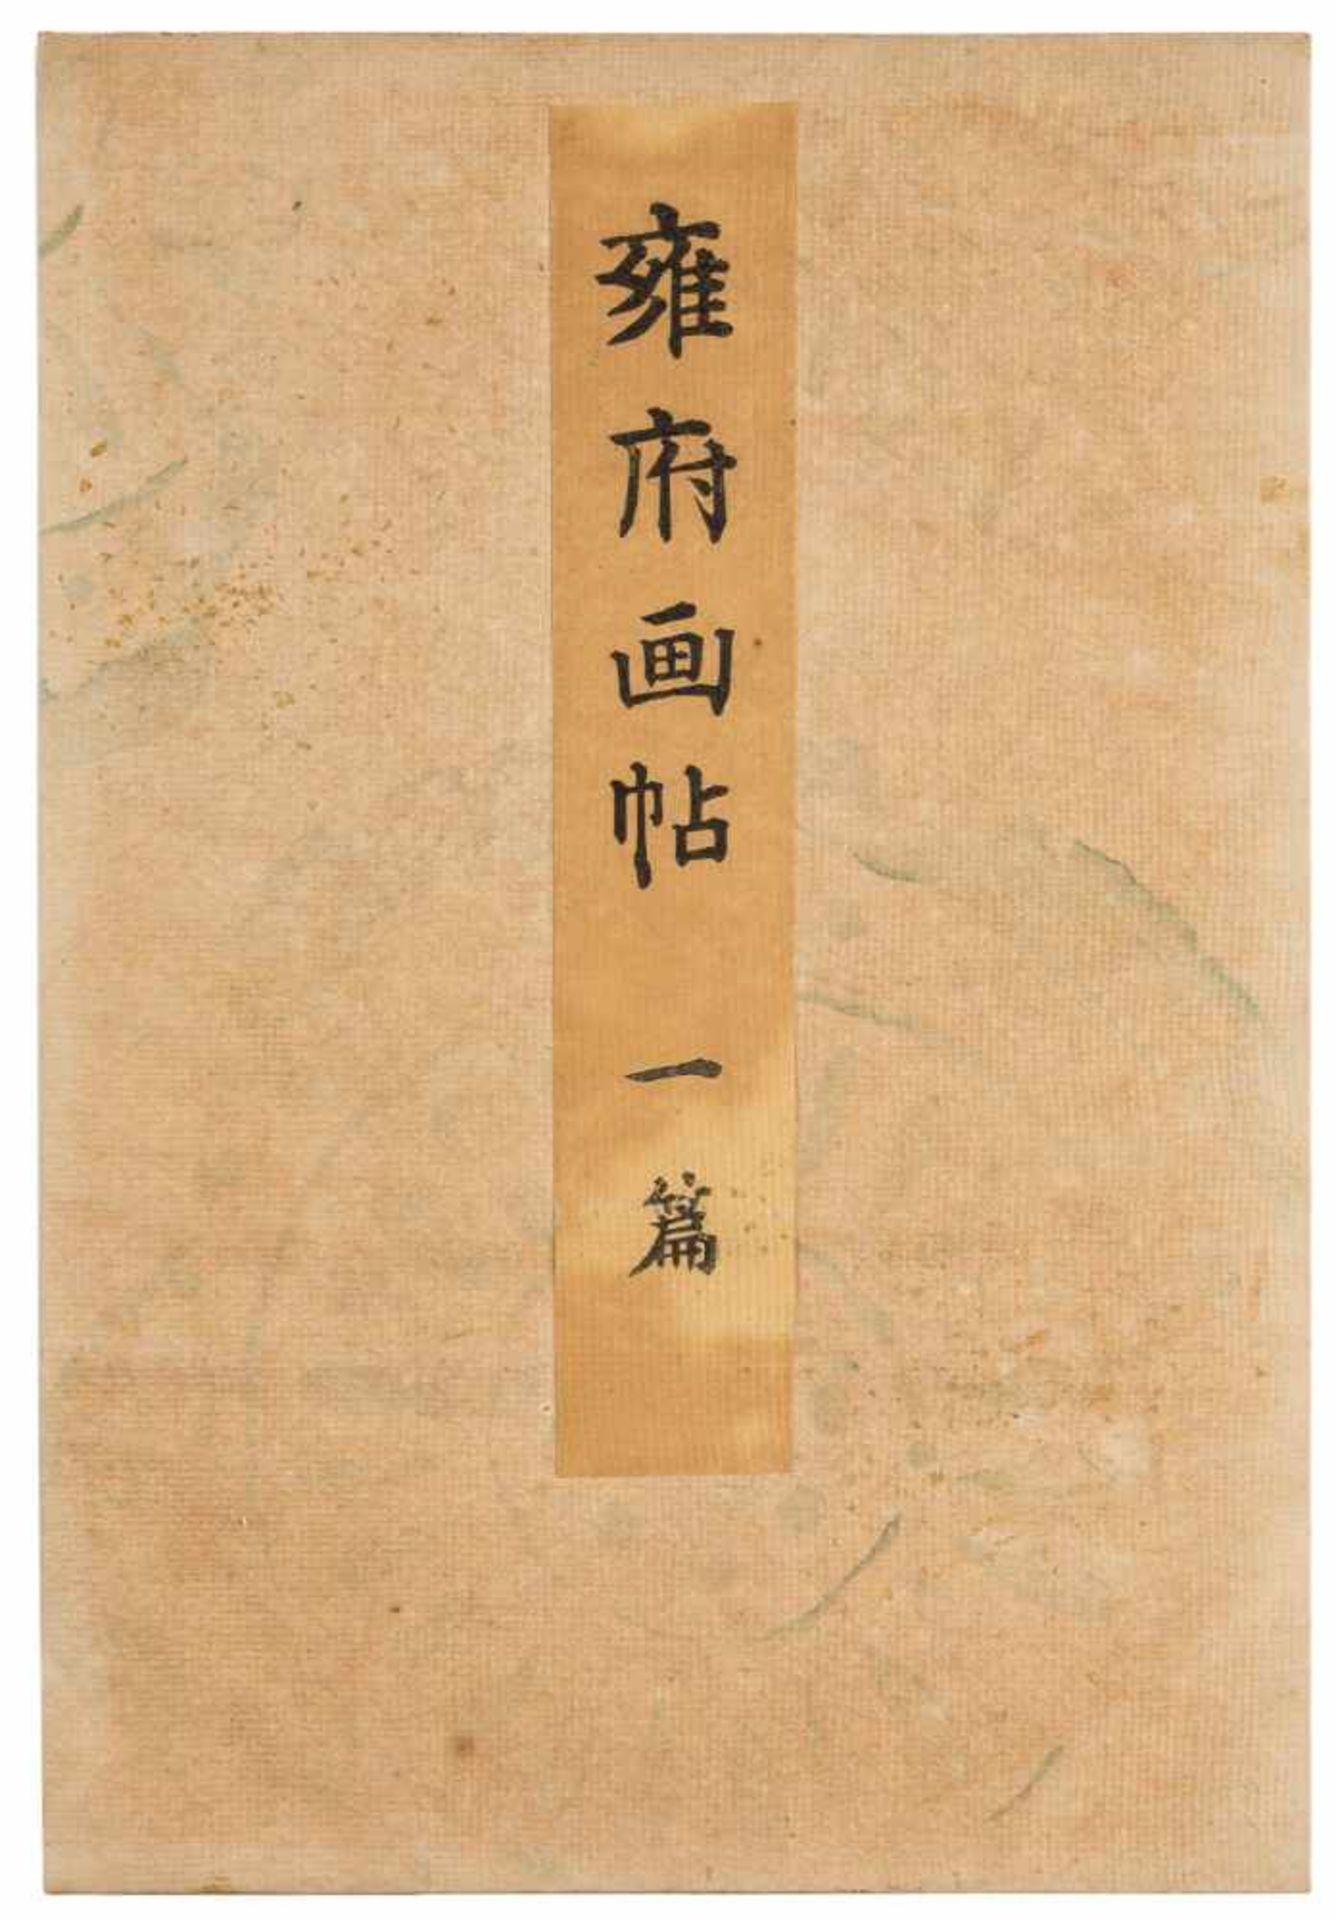 DREI BÜCHER MIT LANDSCHAFTLICHEN SZENEN Japan, 1895 Druck auf Papier. Ca. 23,5 cm x 16 cm. - Bild 2 aus 7